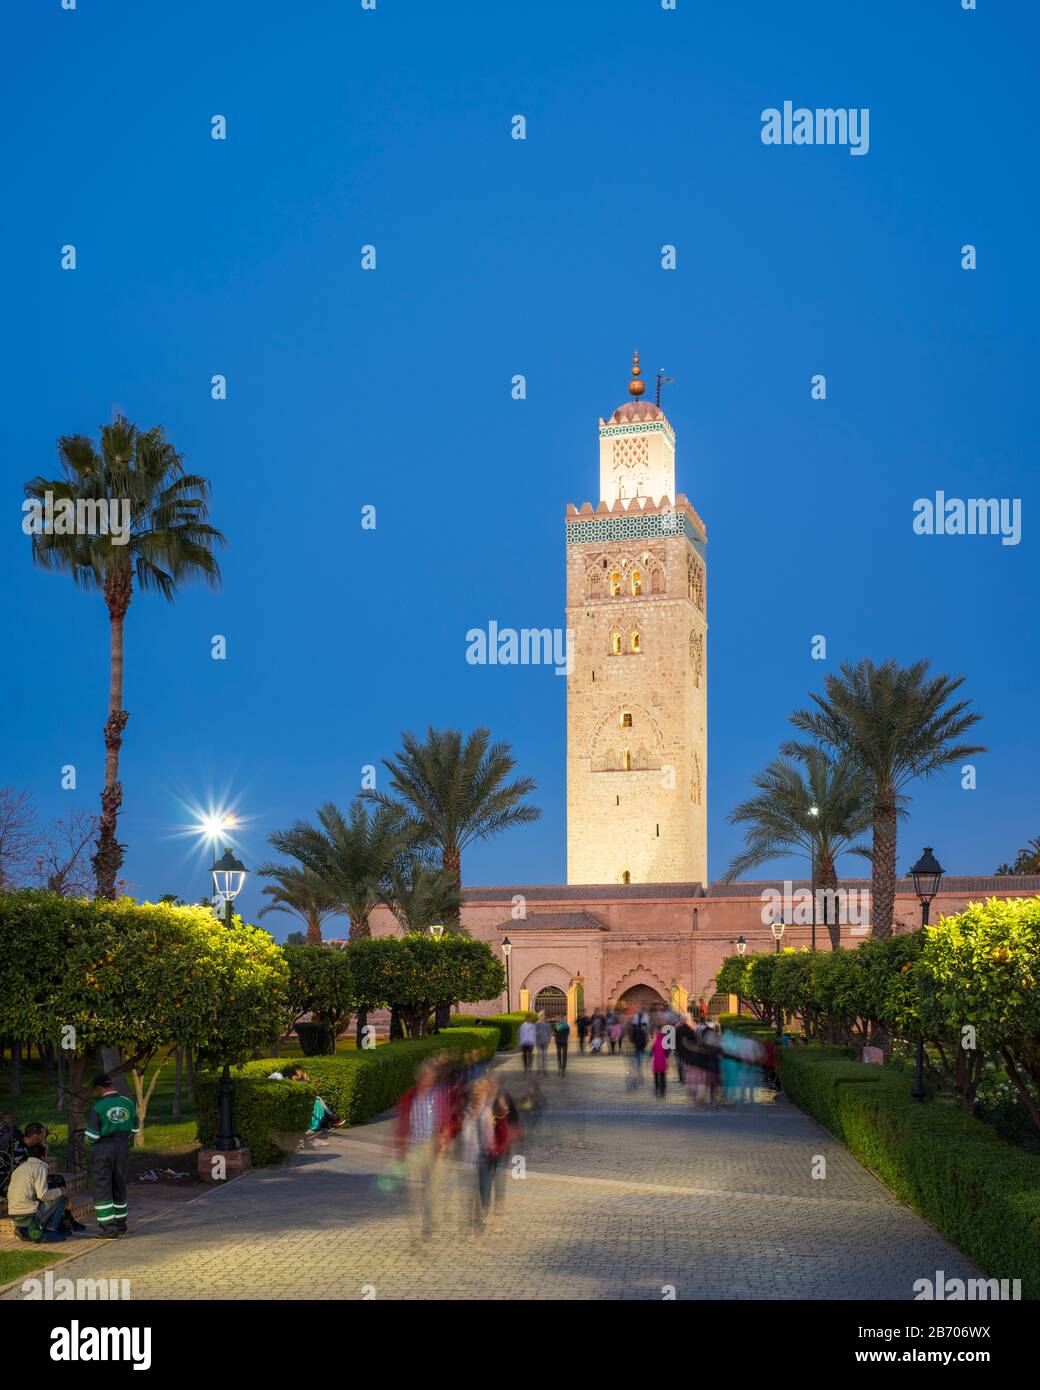 Maroc, Marrakech-Safi (Marrakech-Tensift-El Haouz), Marrakech. Mosquée Koutoubia du XIIe siècle et parc Lalla Hasna au crépuscule. Banque D'Images